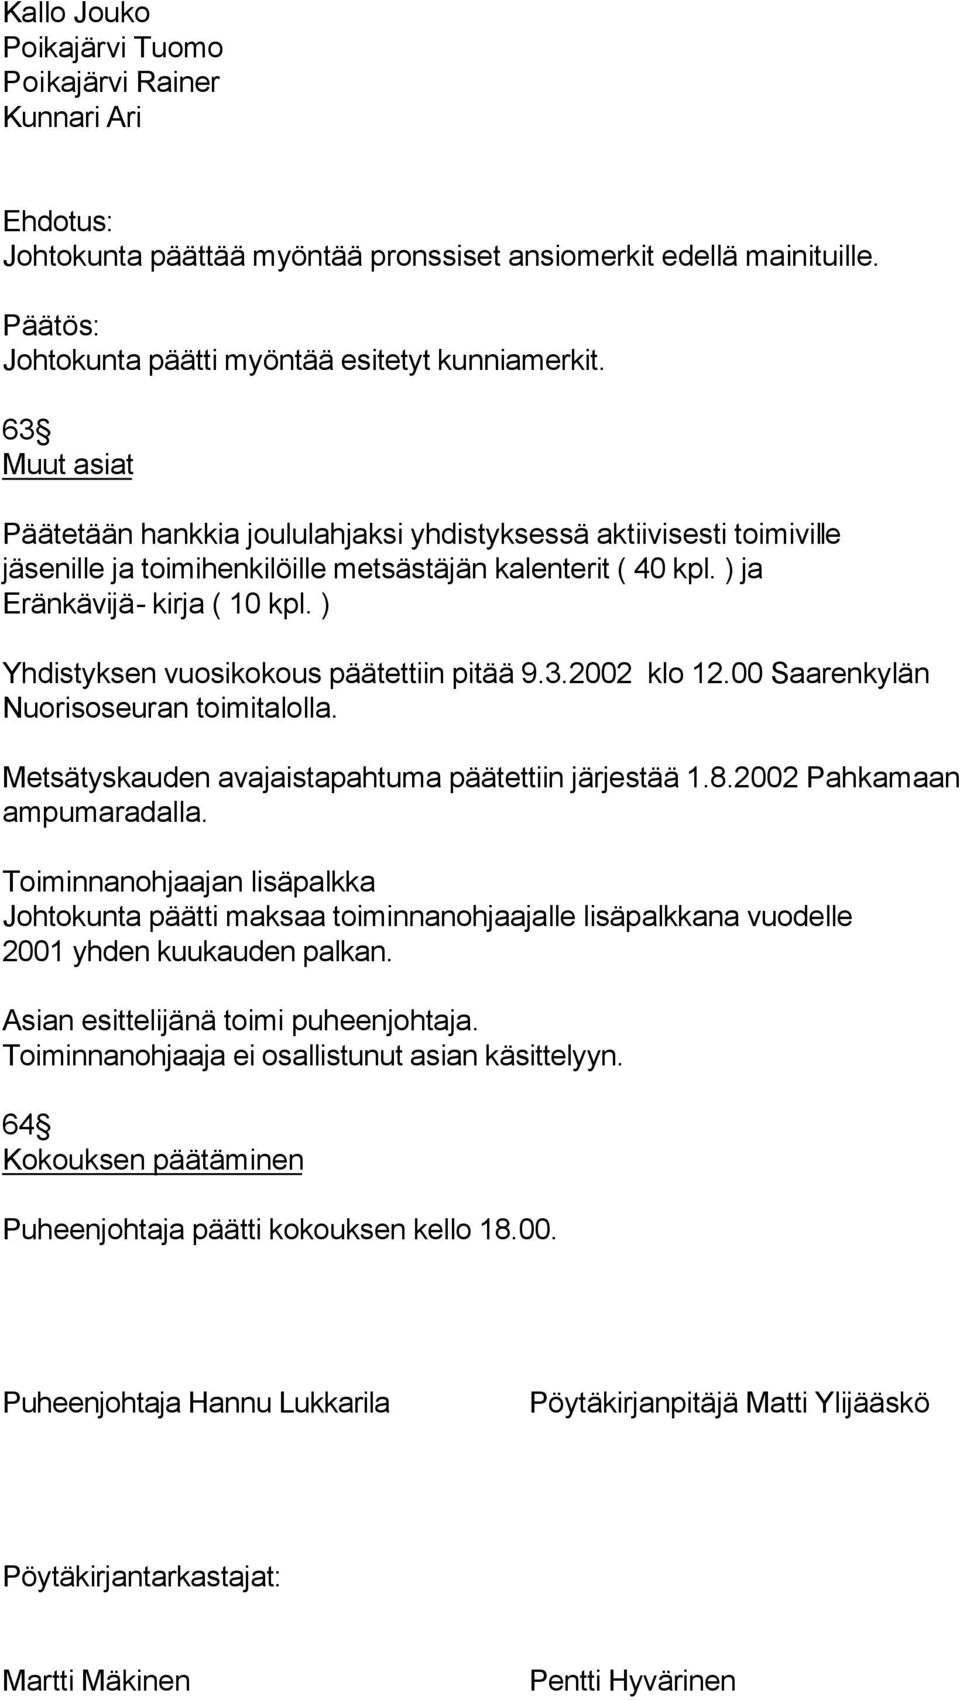 ) Yhdistyksen vuosikokous päätettiin pitää 9.3.2002 klo 12.00 Saarenkylän Nuorisoseuran toimitalolla. Metsätyskauden avajaistapahtuma päätettiin järjestää 1.8.2002 Pahkamaan ampumaradalla.